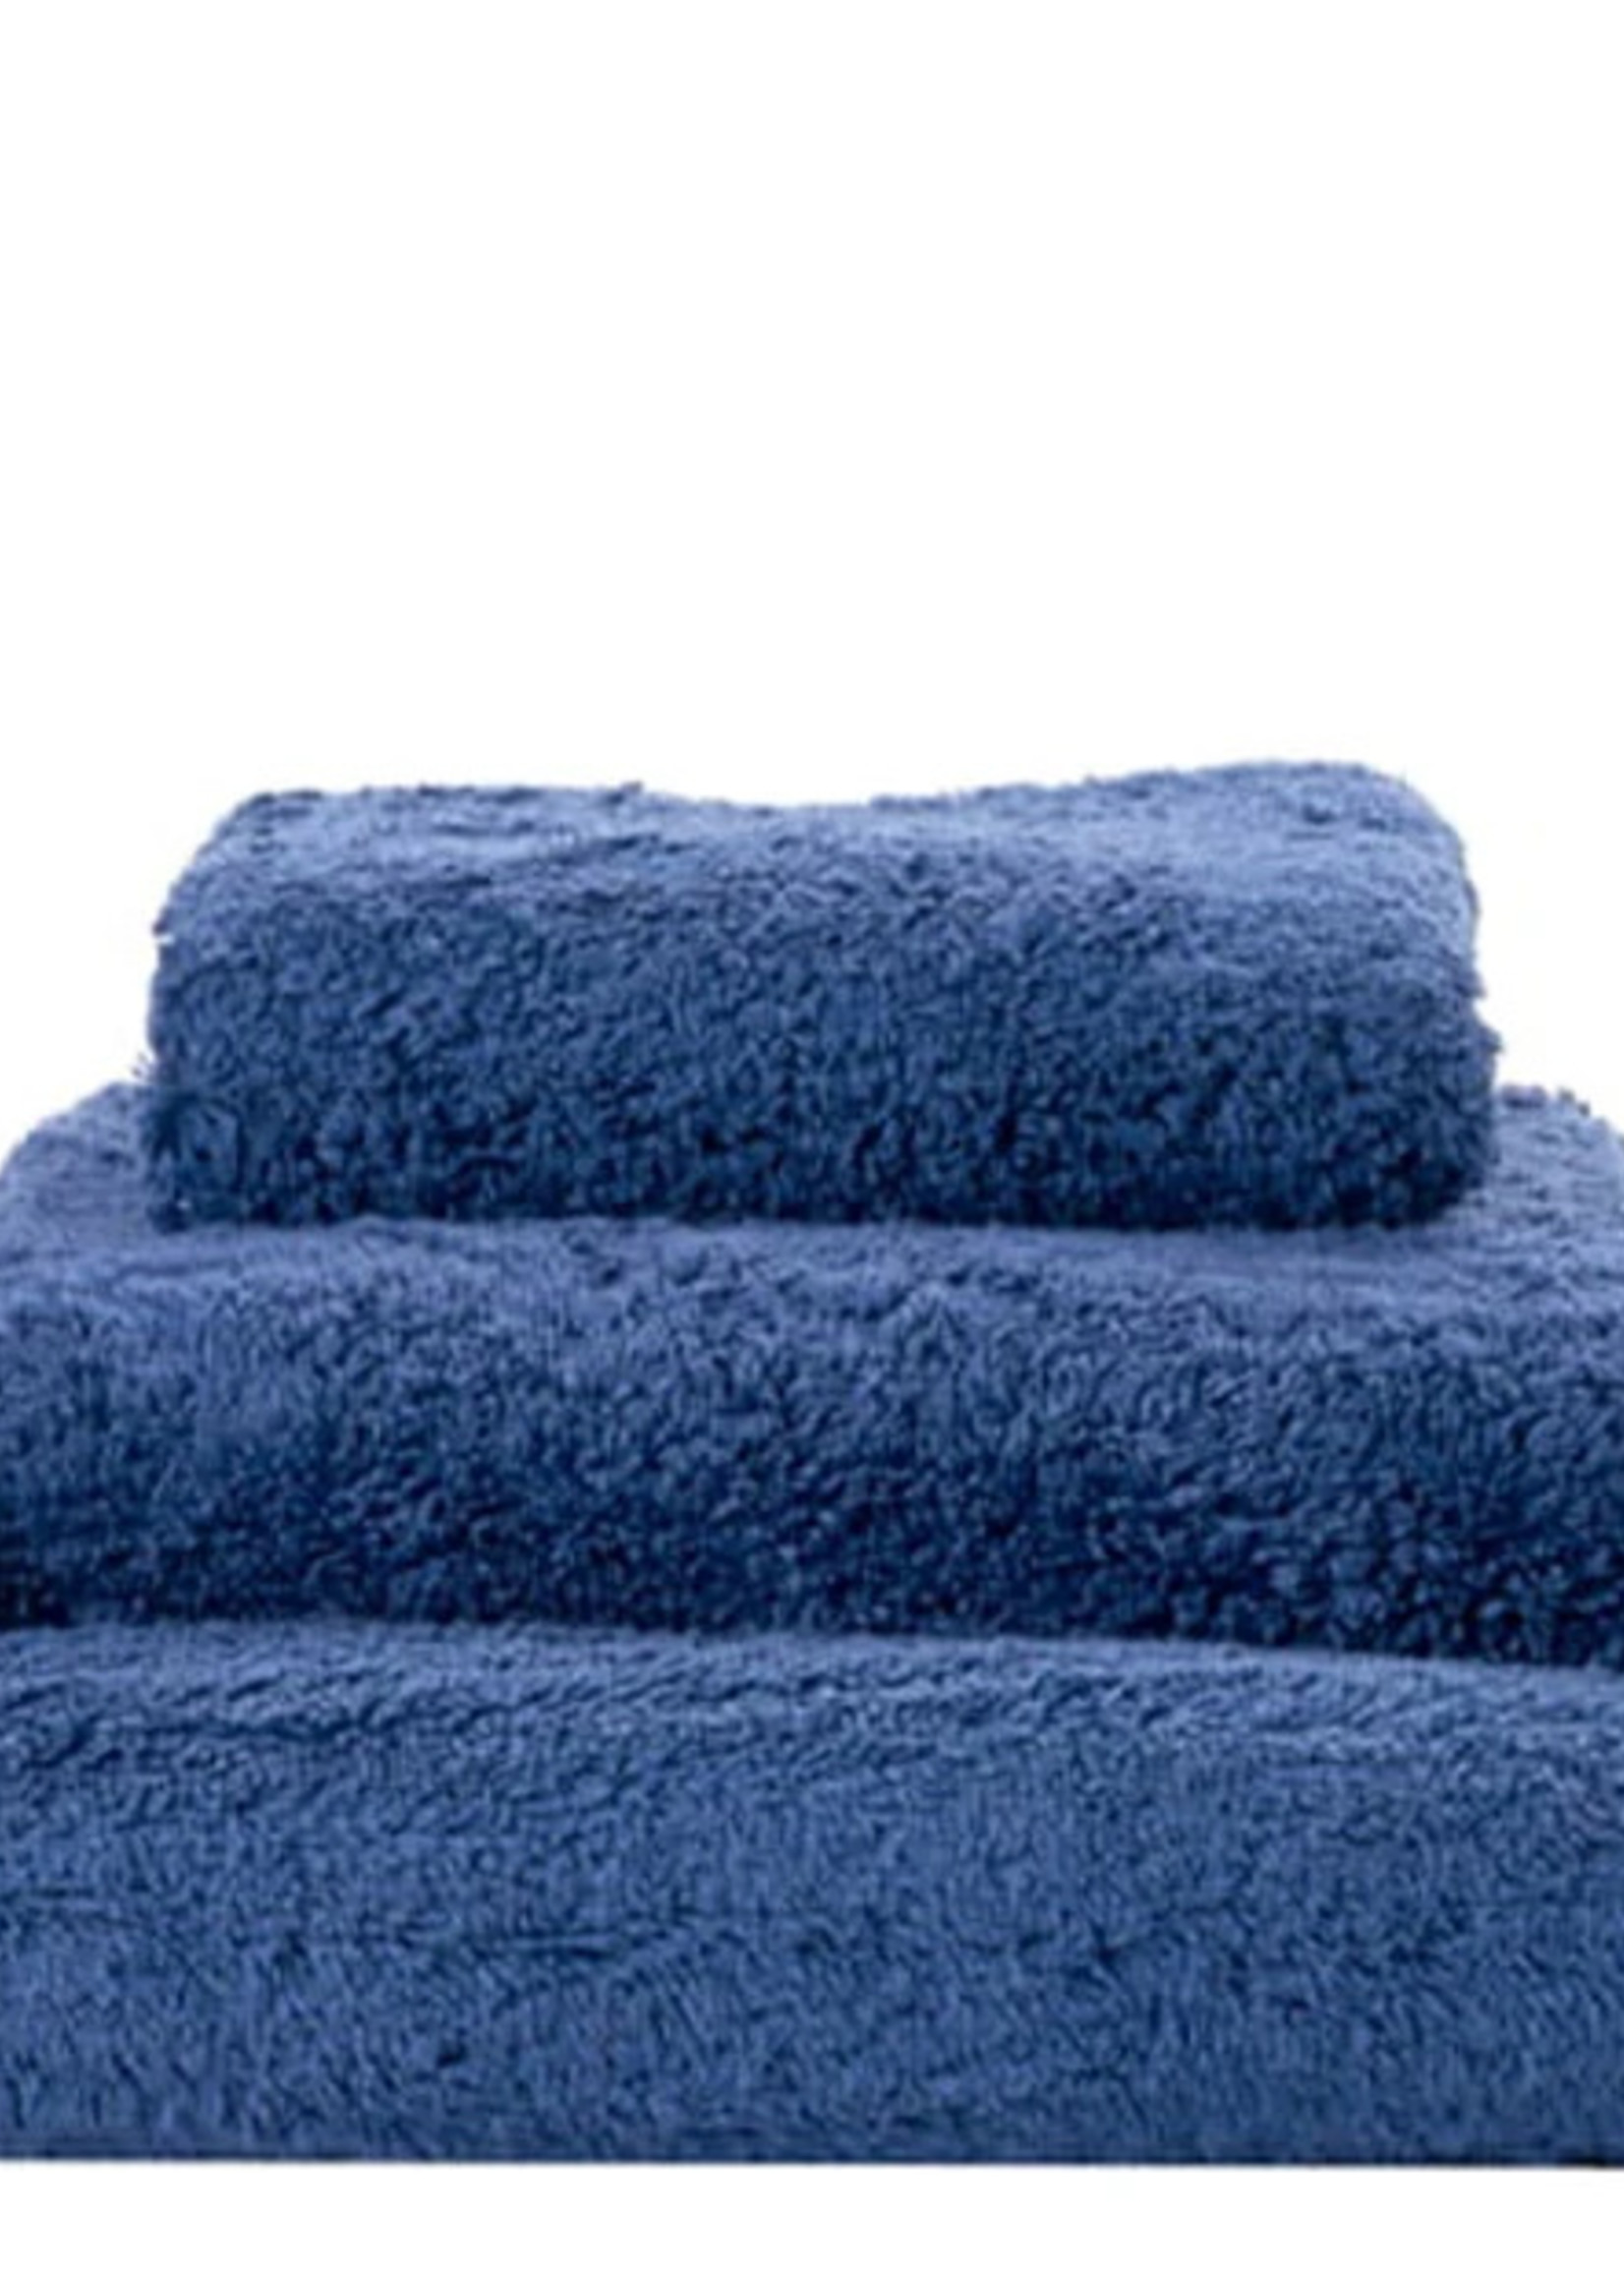 https://cdn.shoplightspeed.com/shops/614084/files/30584284/1652x2313x1/abyss-habidecor-super-pile-cadette-blue-towels.jpg